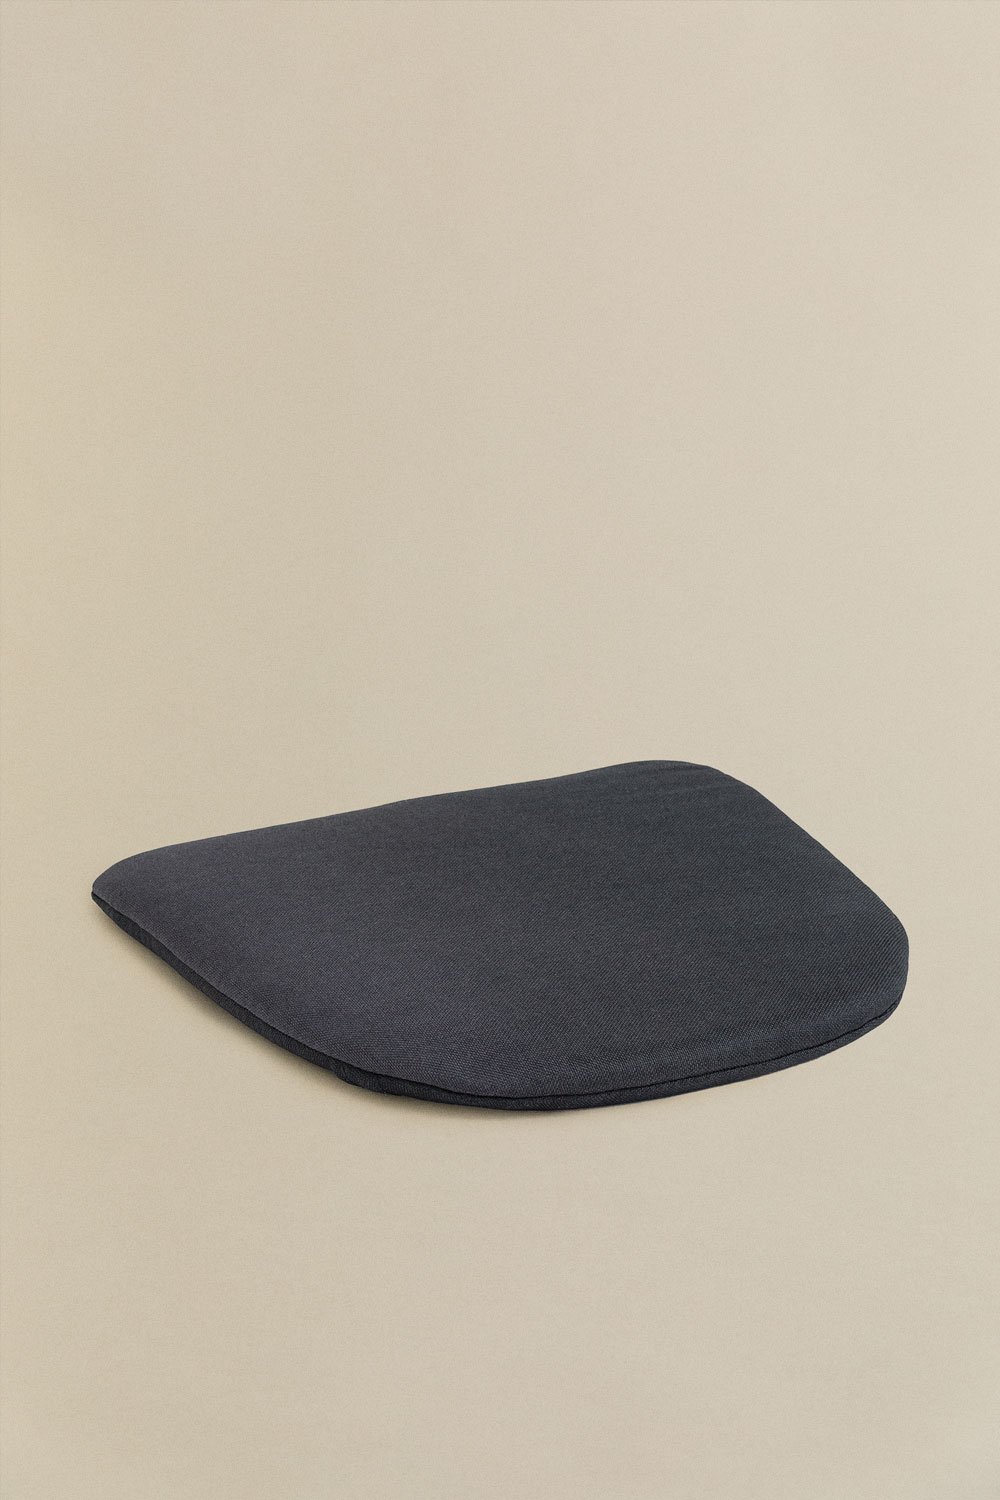 Cuscino in tessuto per sedia LIX, immagine della galleria 1